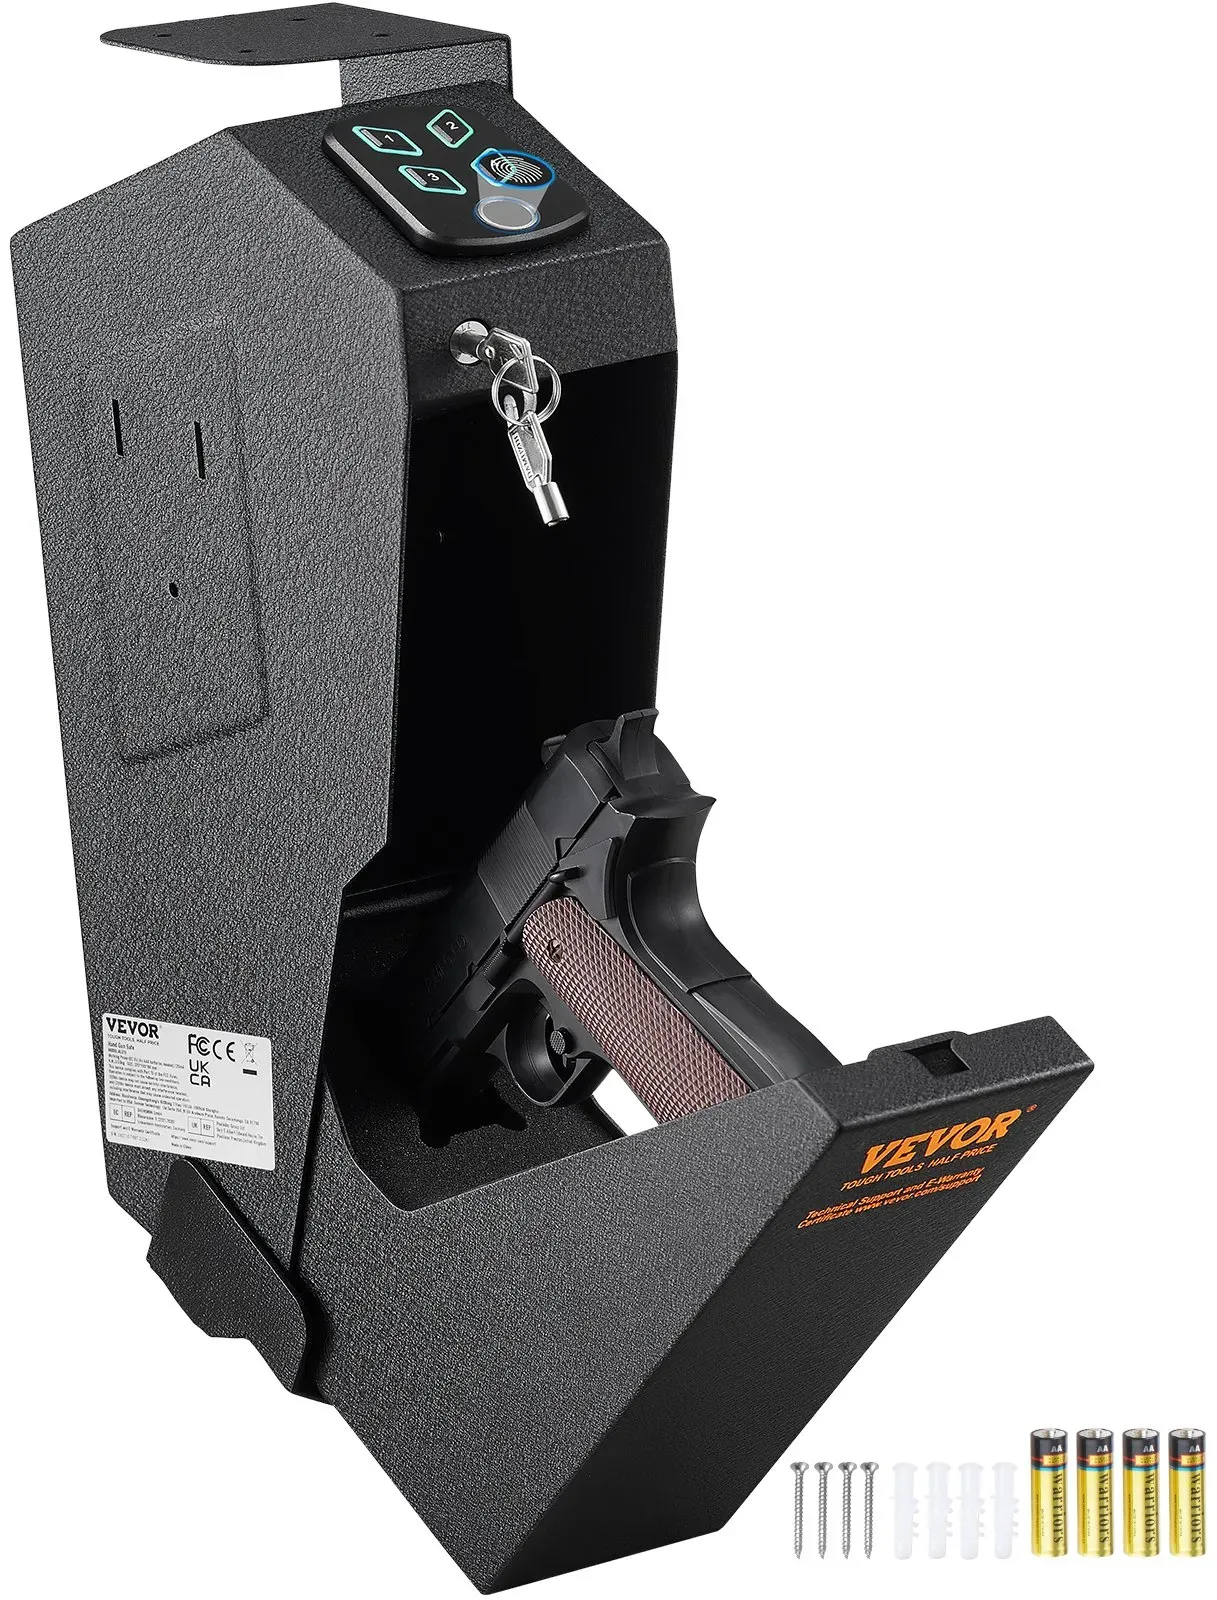 VEVOR montierter Waffentresor für Pistolen, biometrischer Waffentresor, 3 Zugangsmöglichkeiten für 1 Pistole